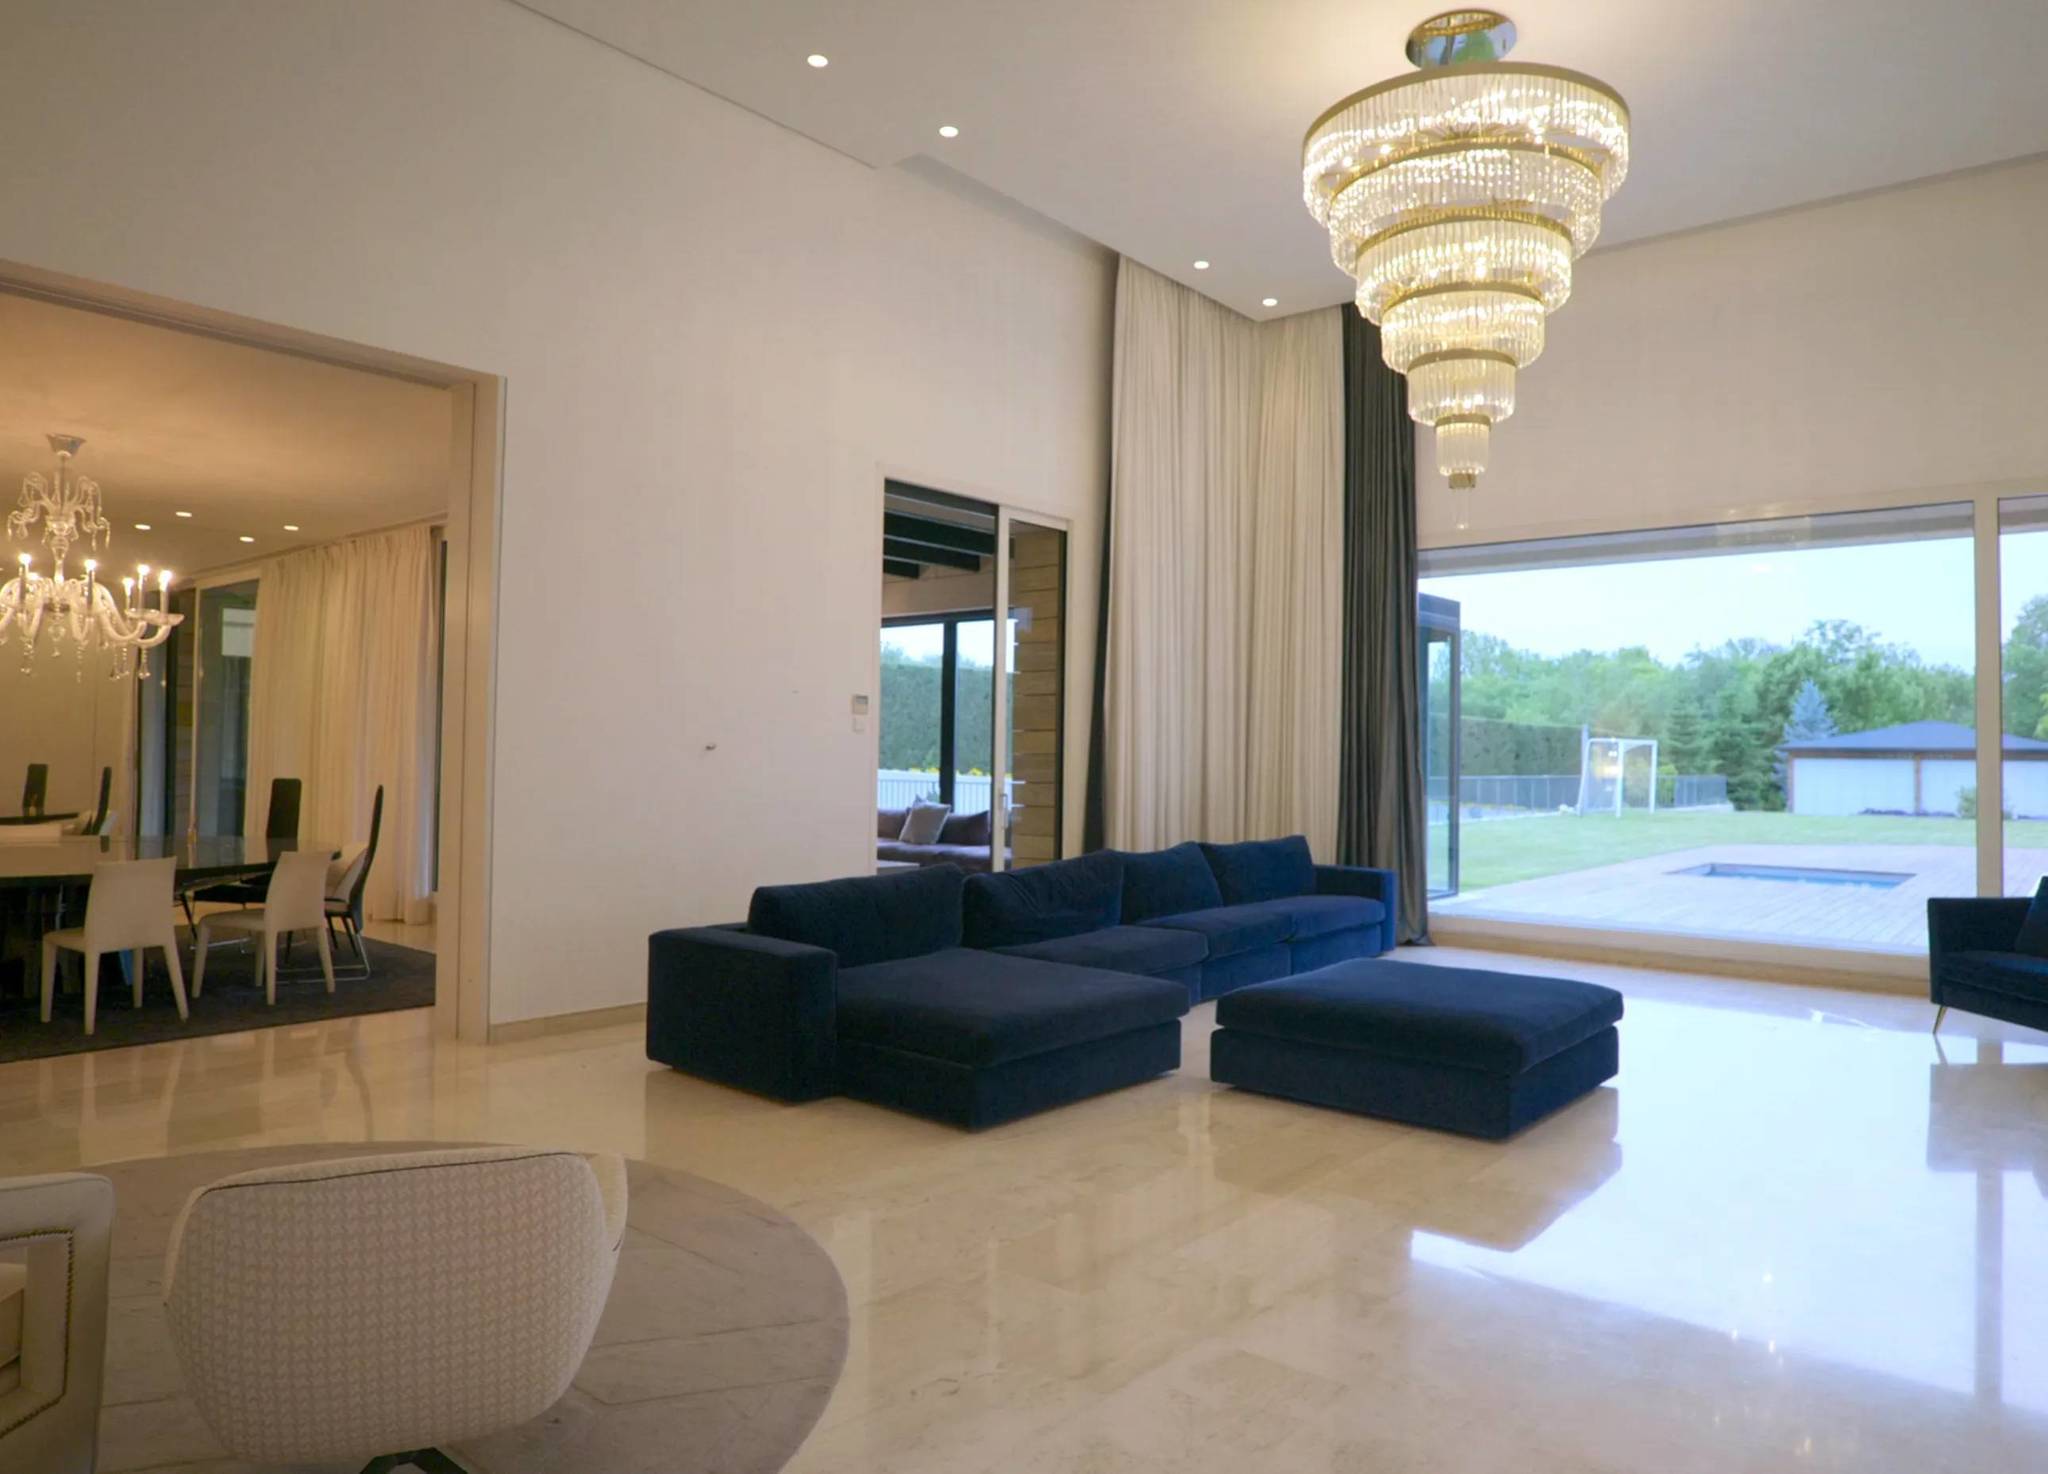 عکس | عمارت لاکچری رونالدو و جورجینا/با 10 هزار یورو در اتاق کریستیانو بخوابید!